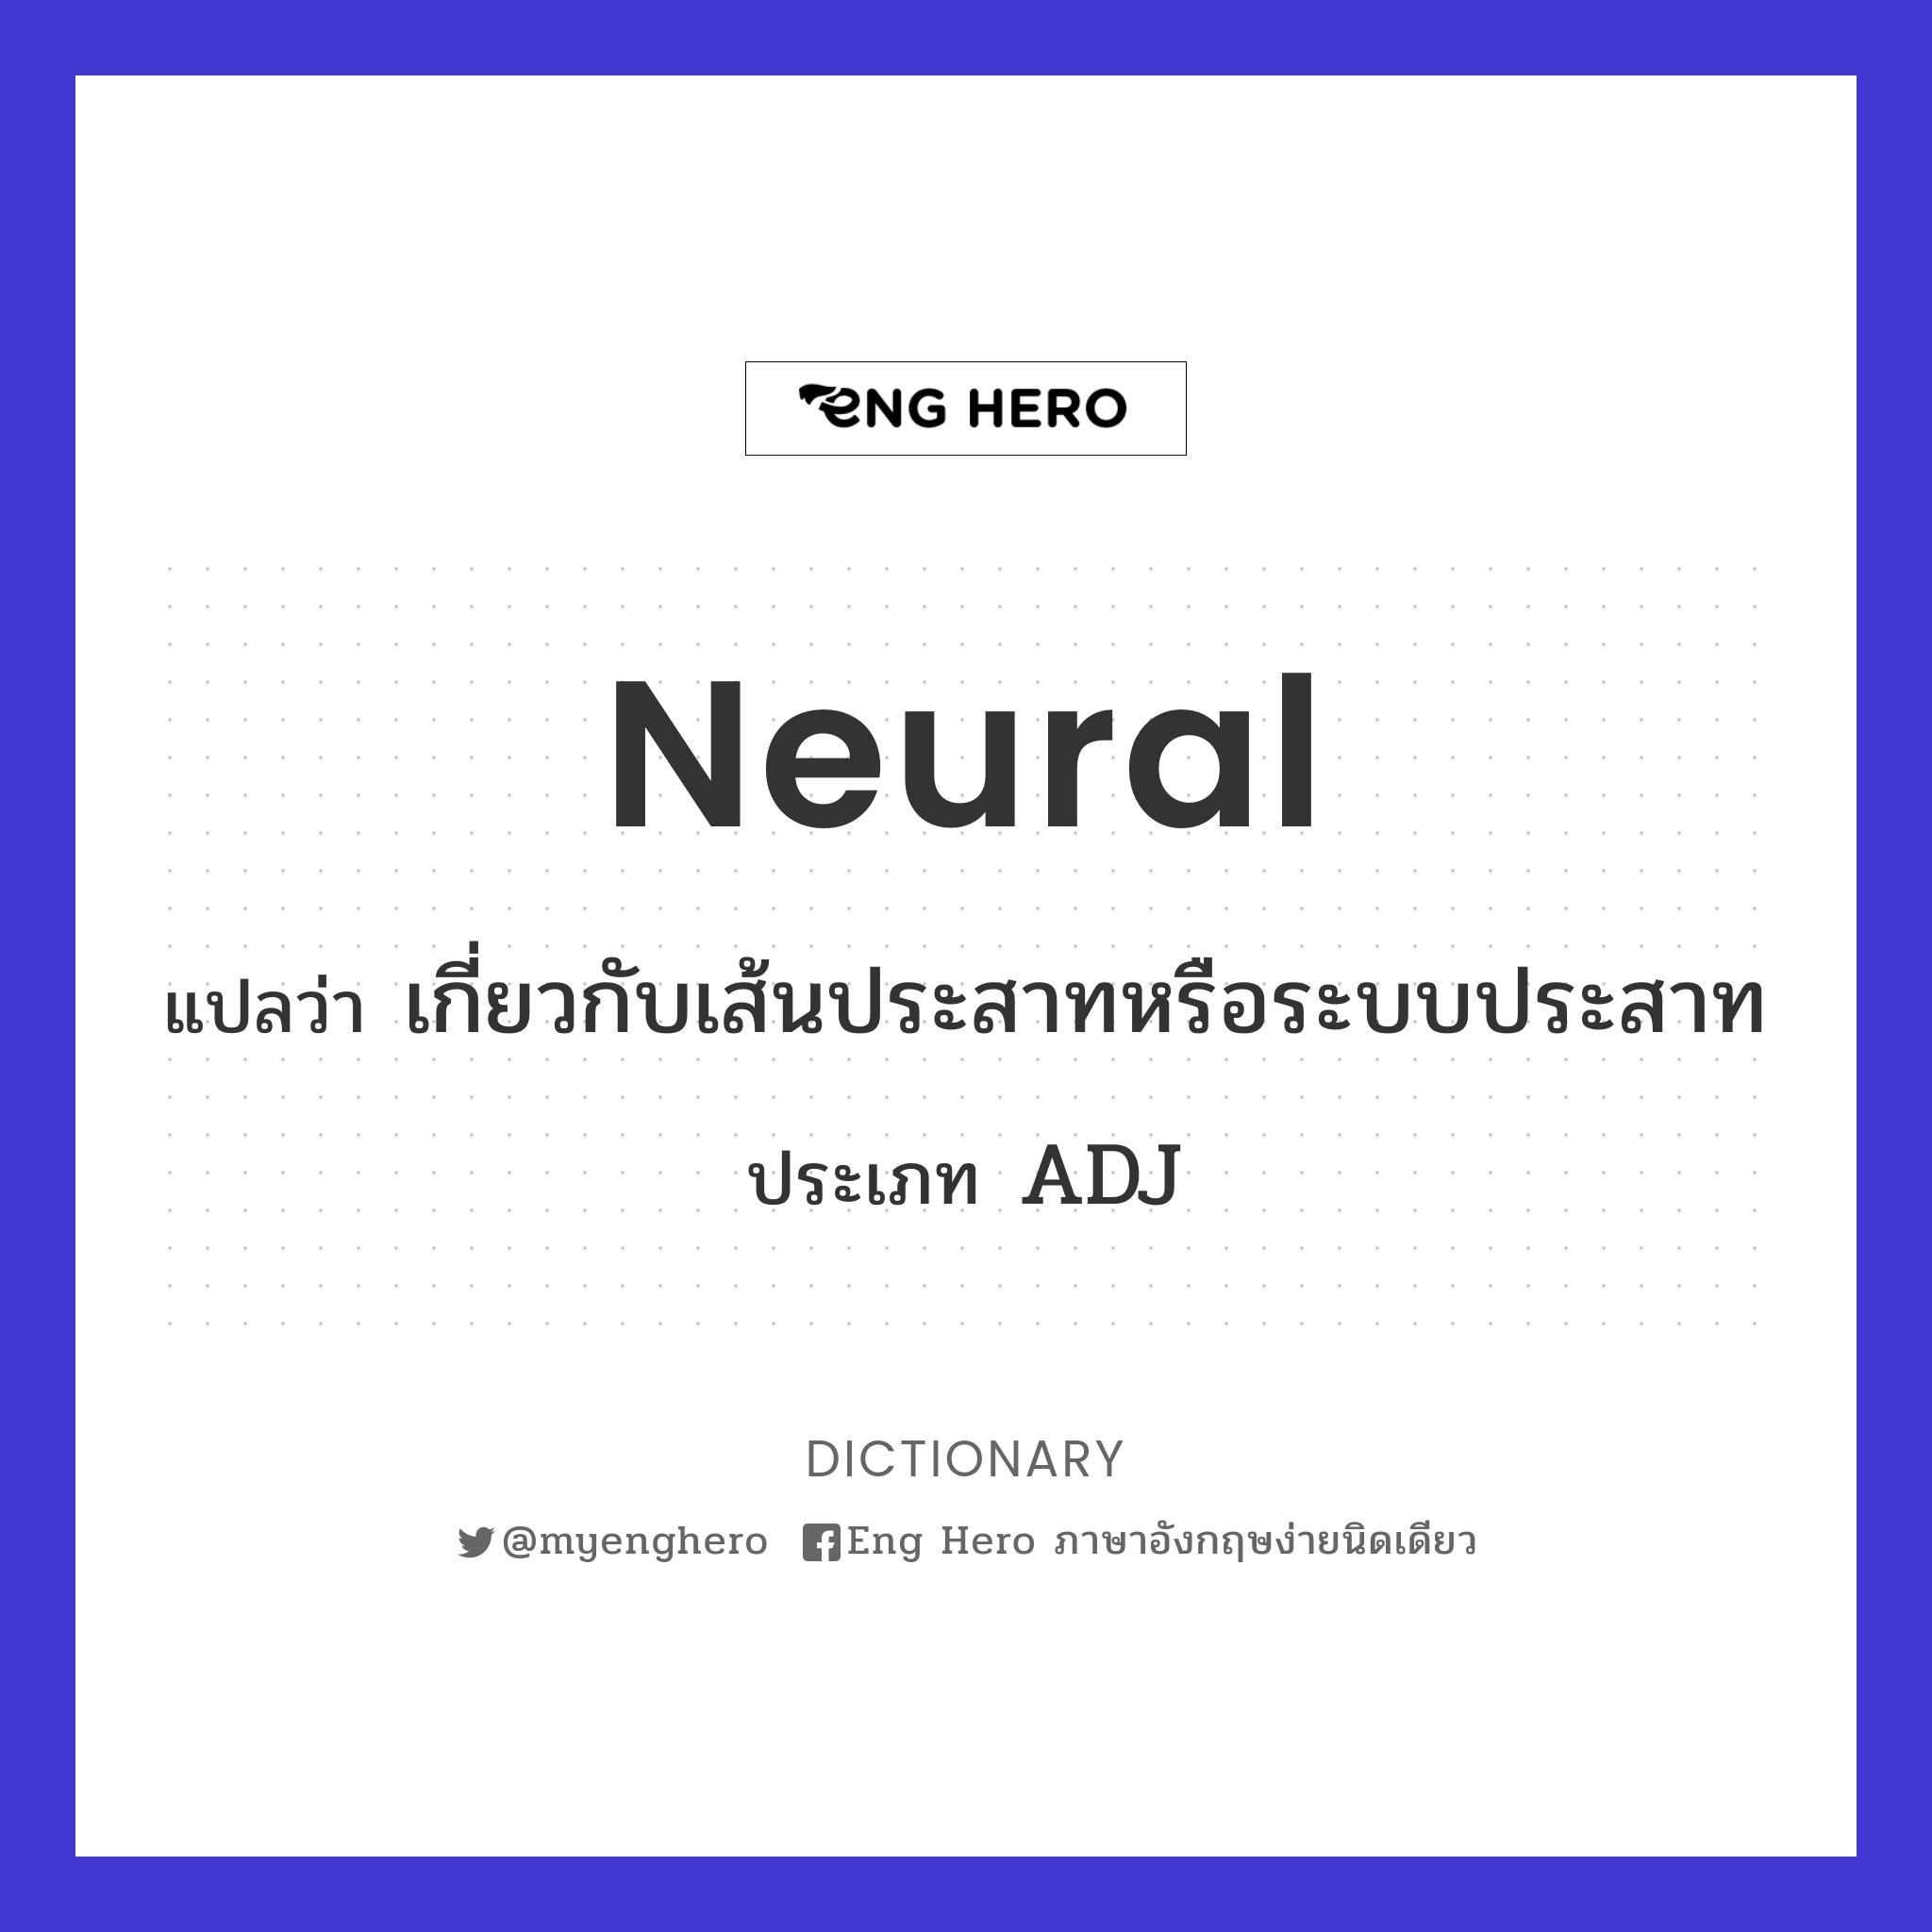 neural